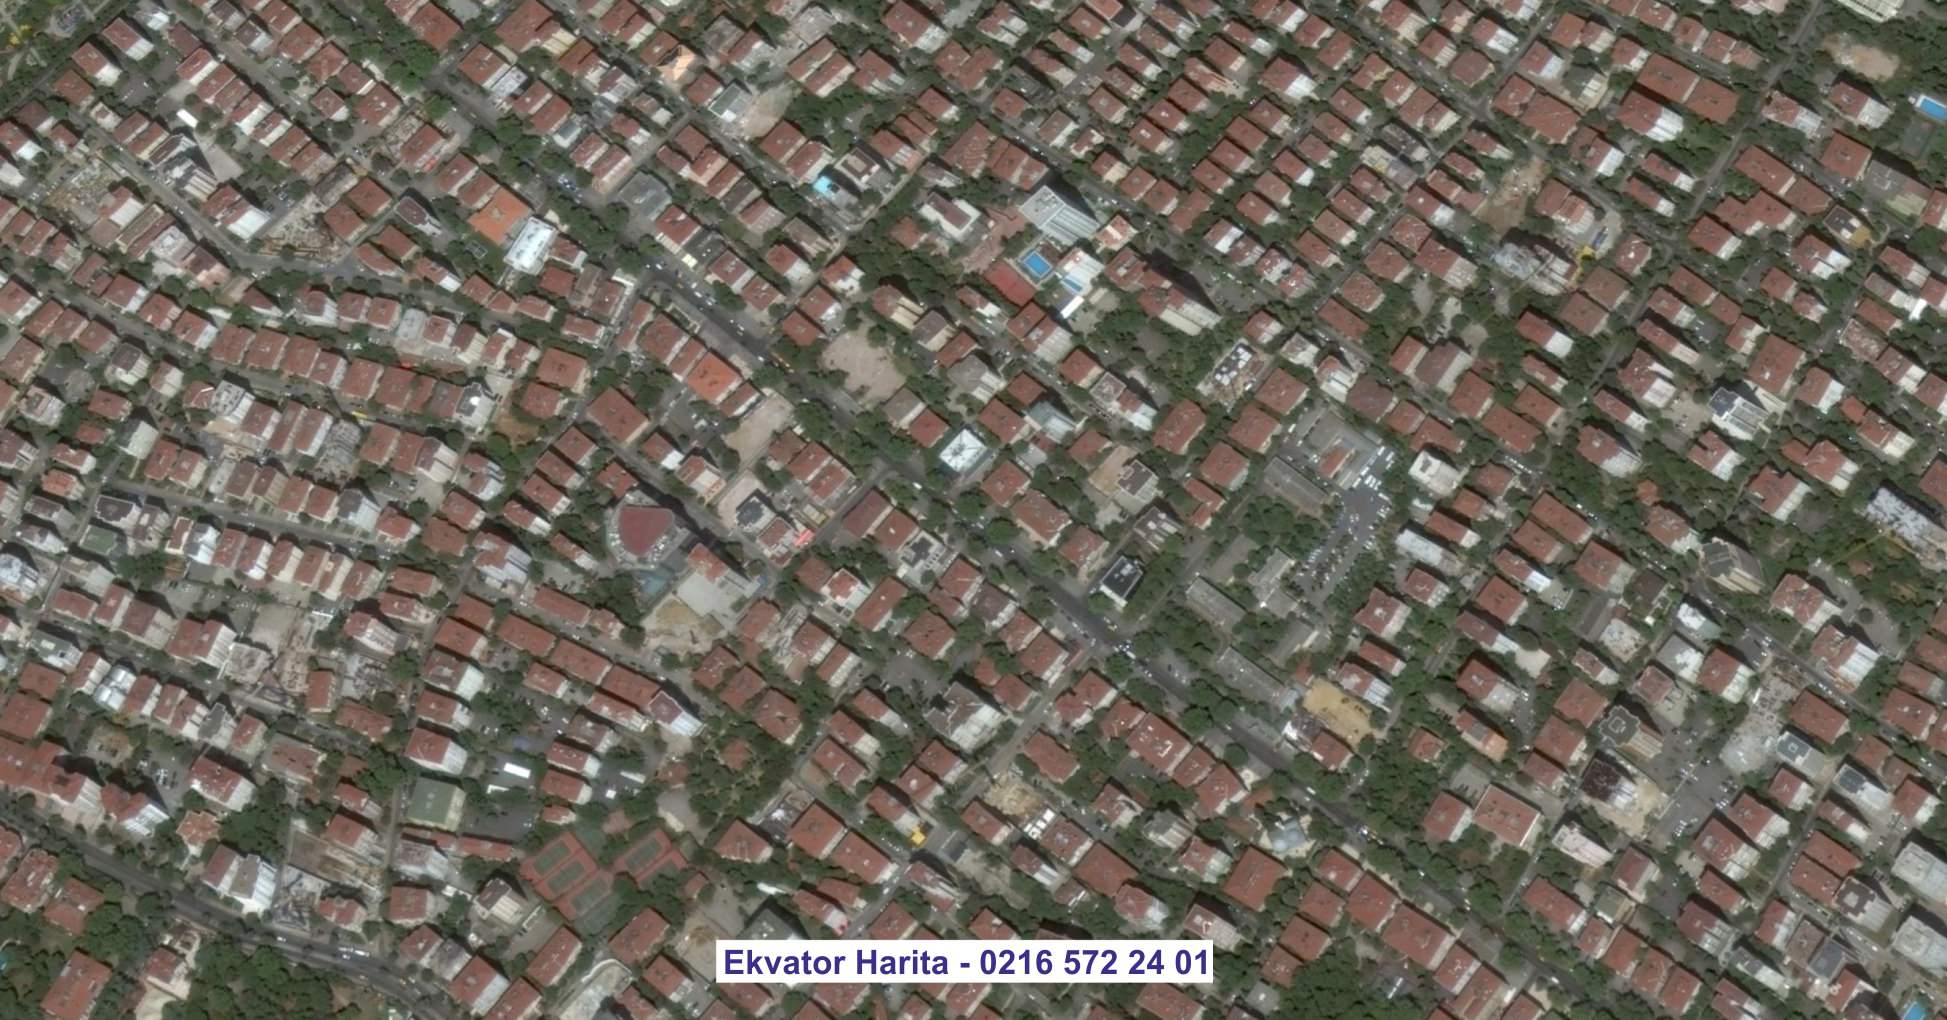 Balgat Uydu Görüntüsü Örnek Fotoğrafı